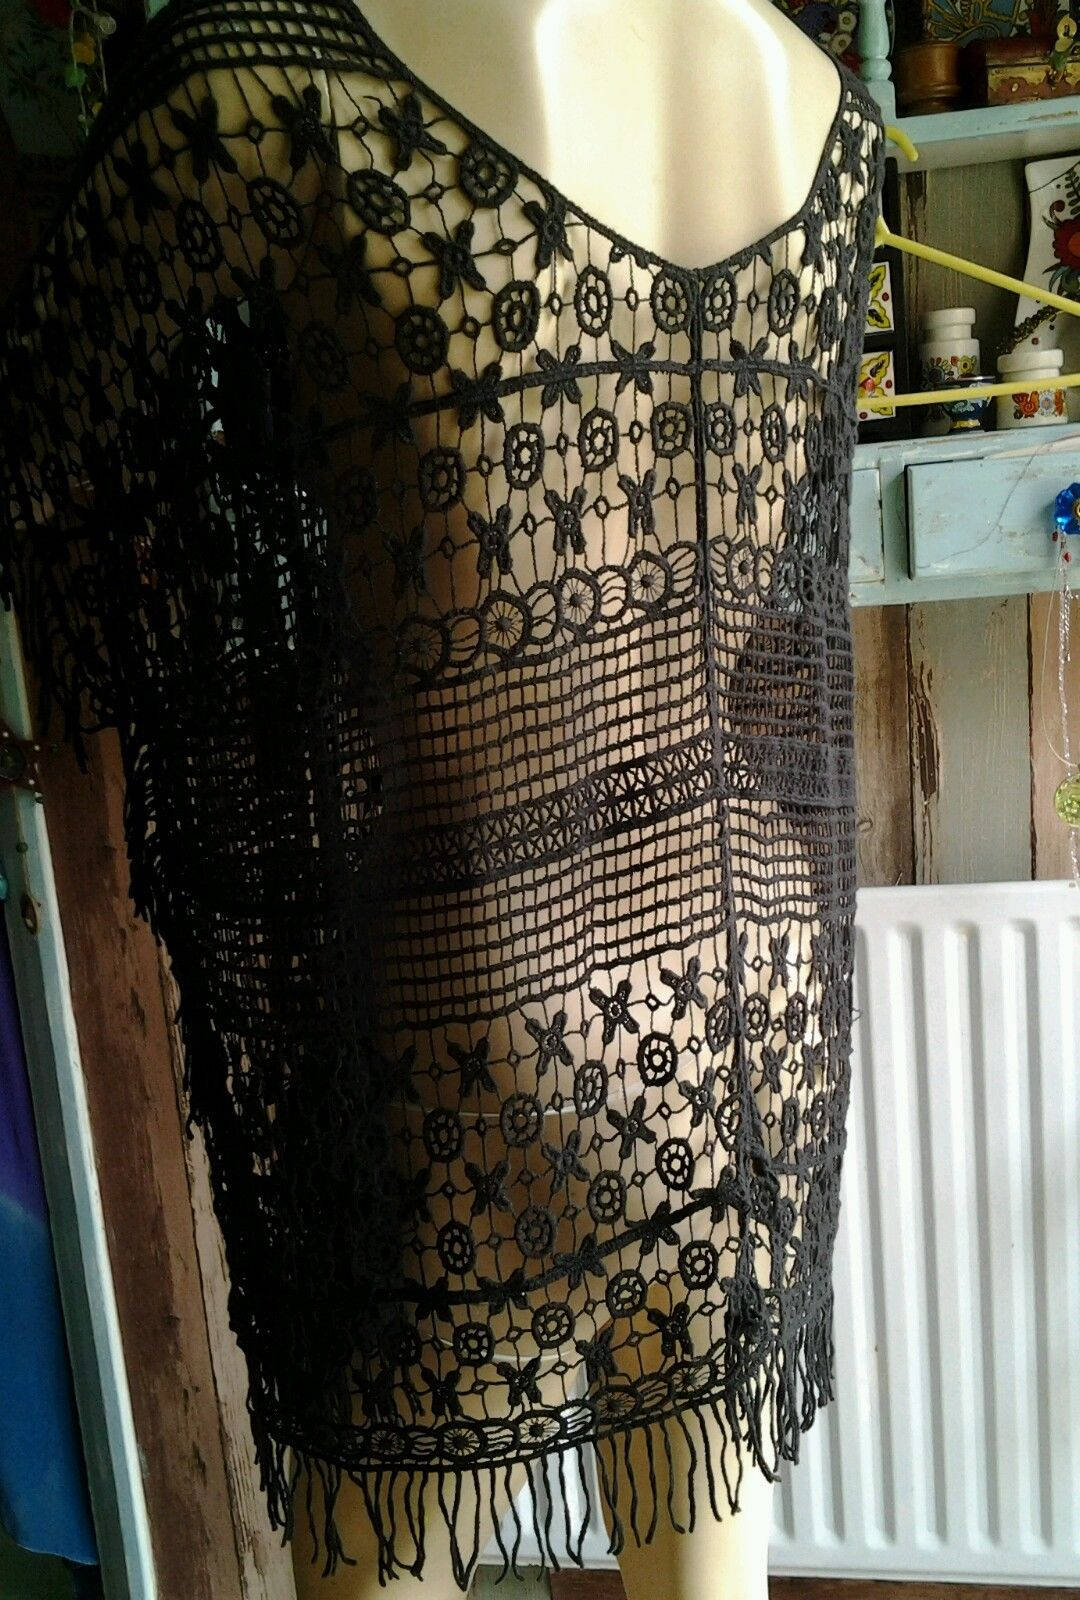 Vintage Steampunk goth hippy black Cotton MIX Crochet dress Wonkey Donkey Bazaar